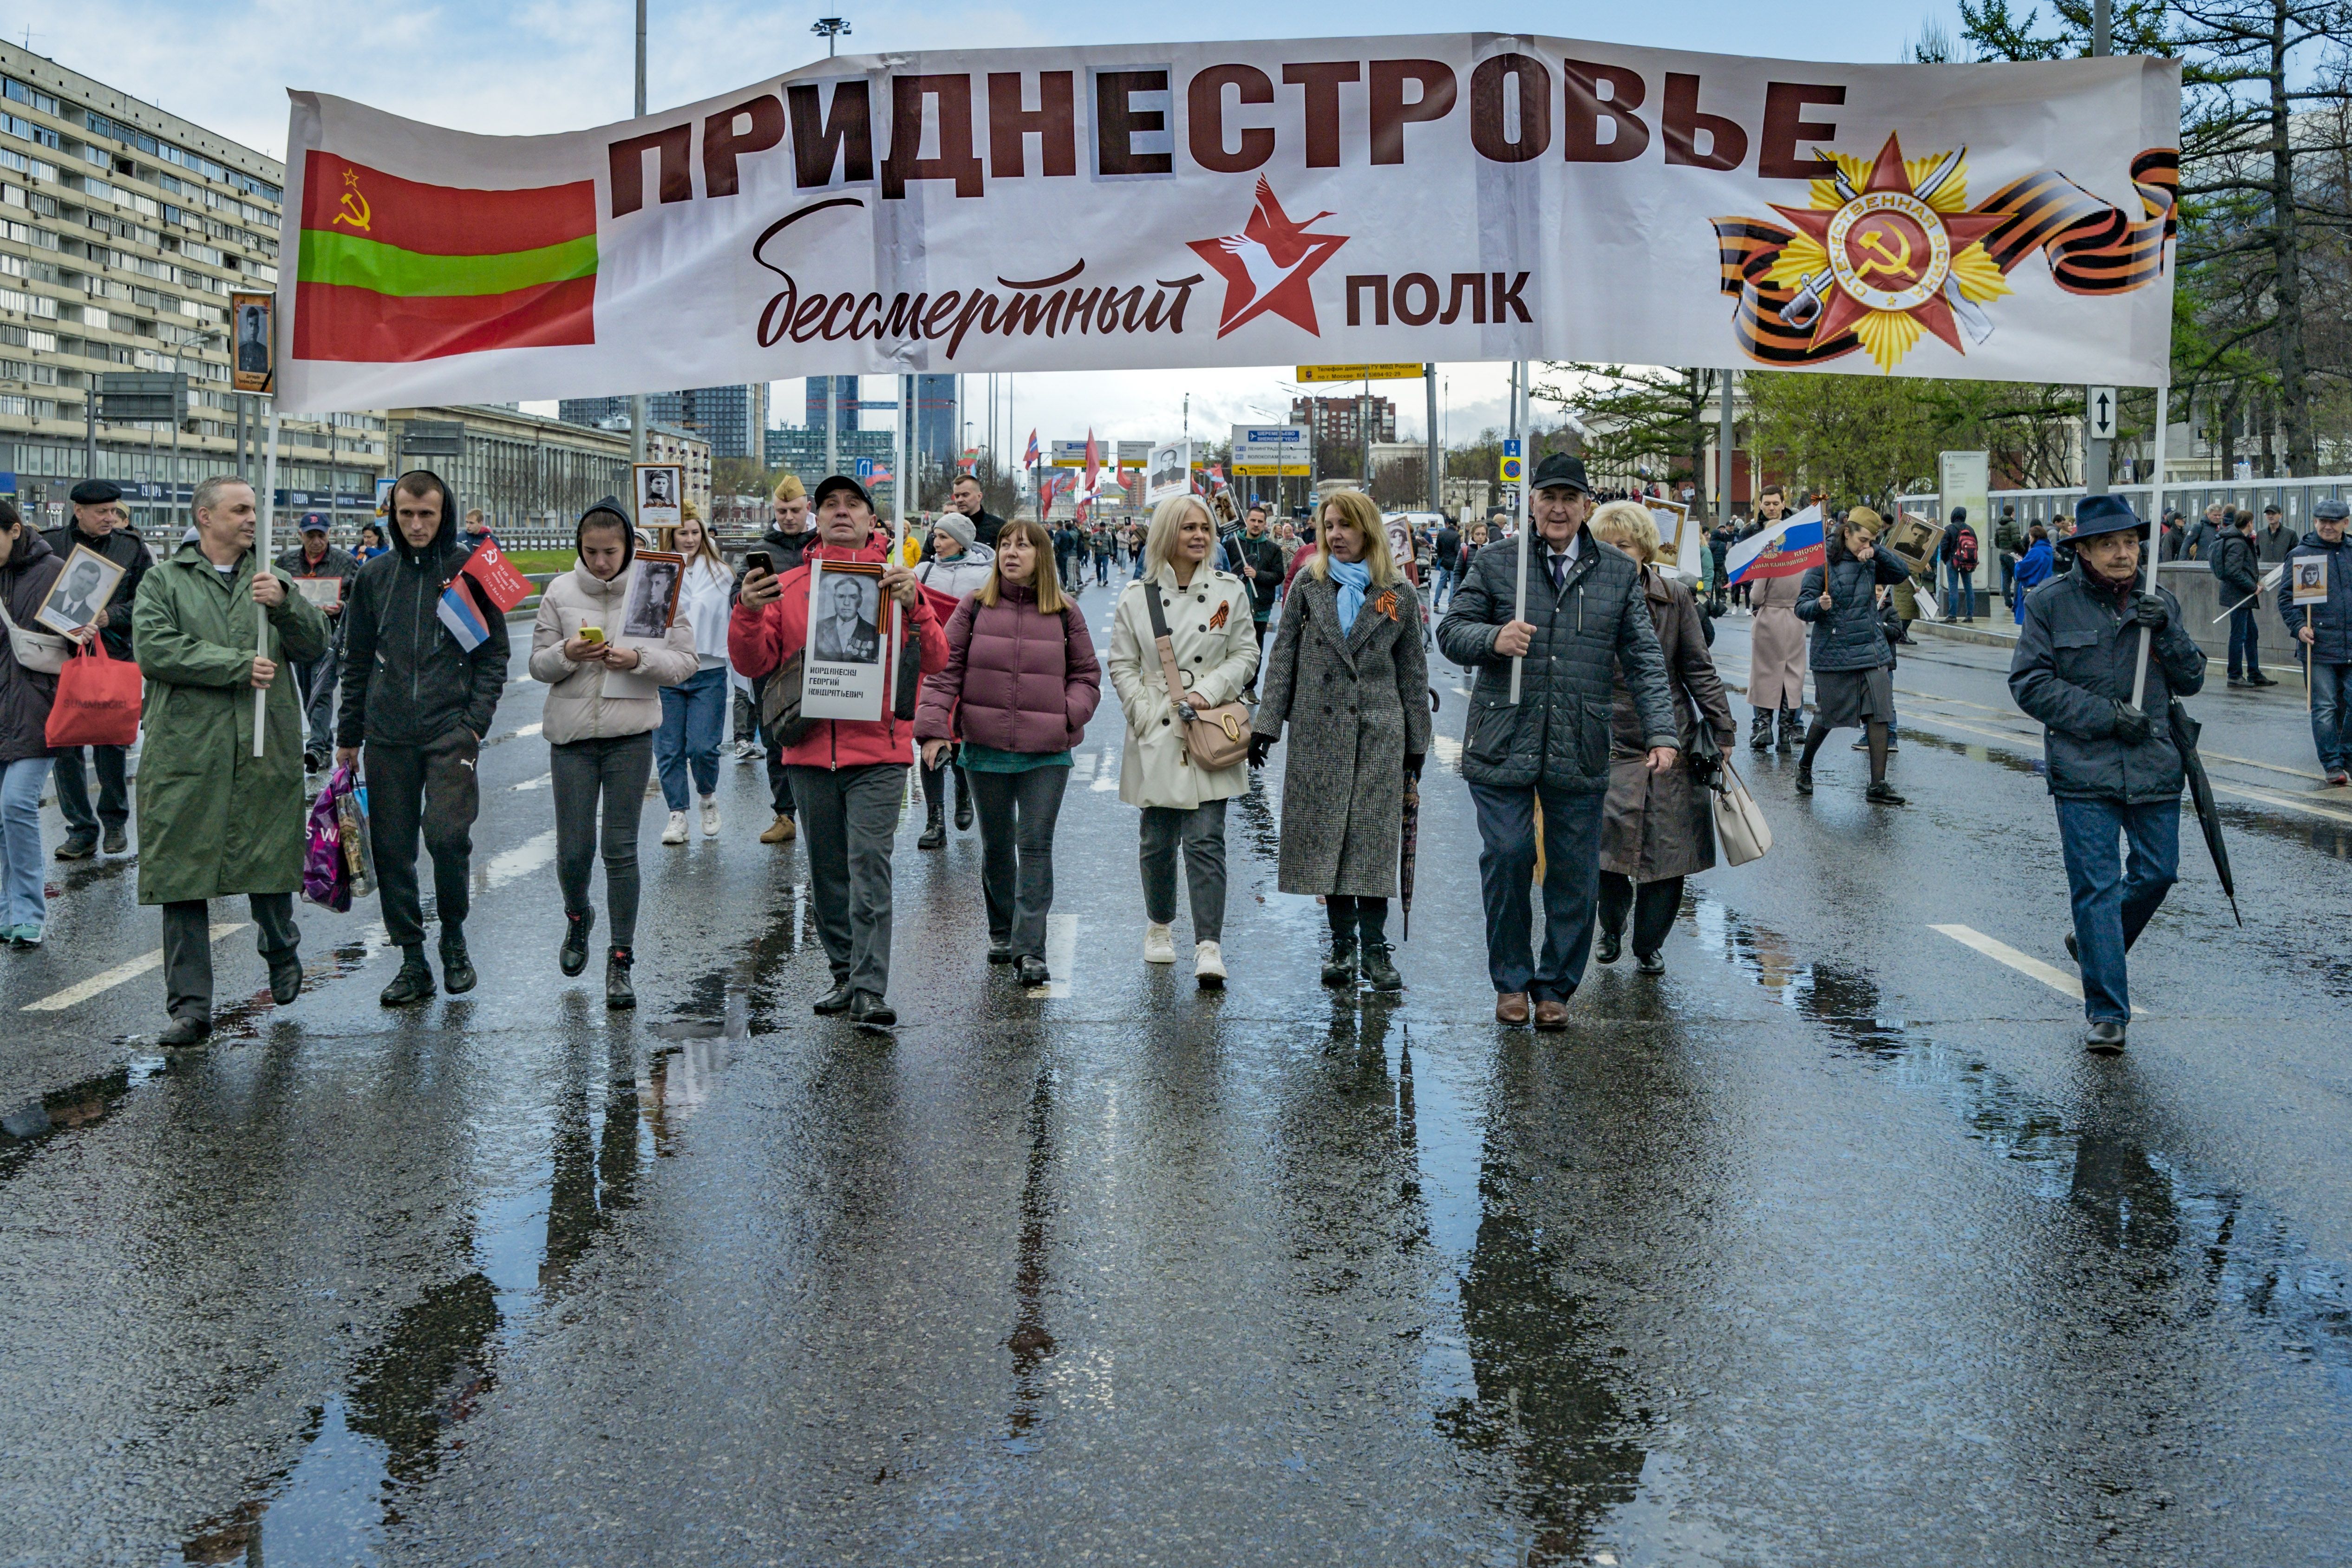 Загроза дестабілізації у Молдові існує: політолог розповів про підступні плани Путіна